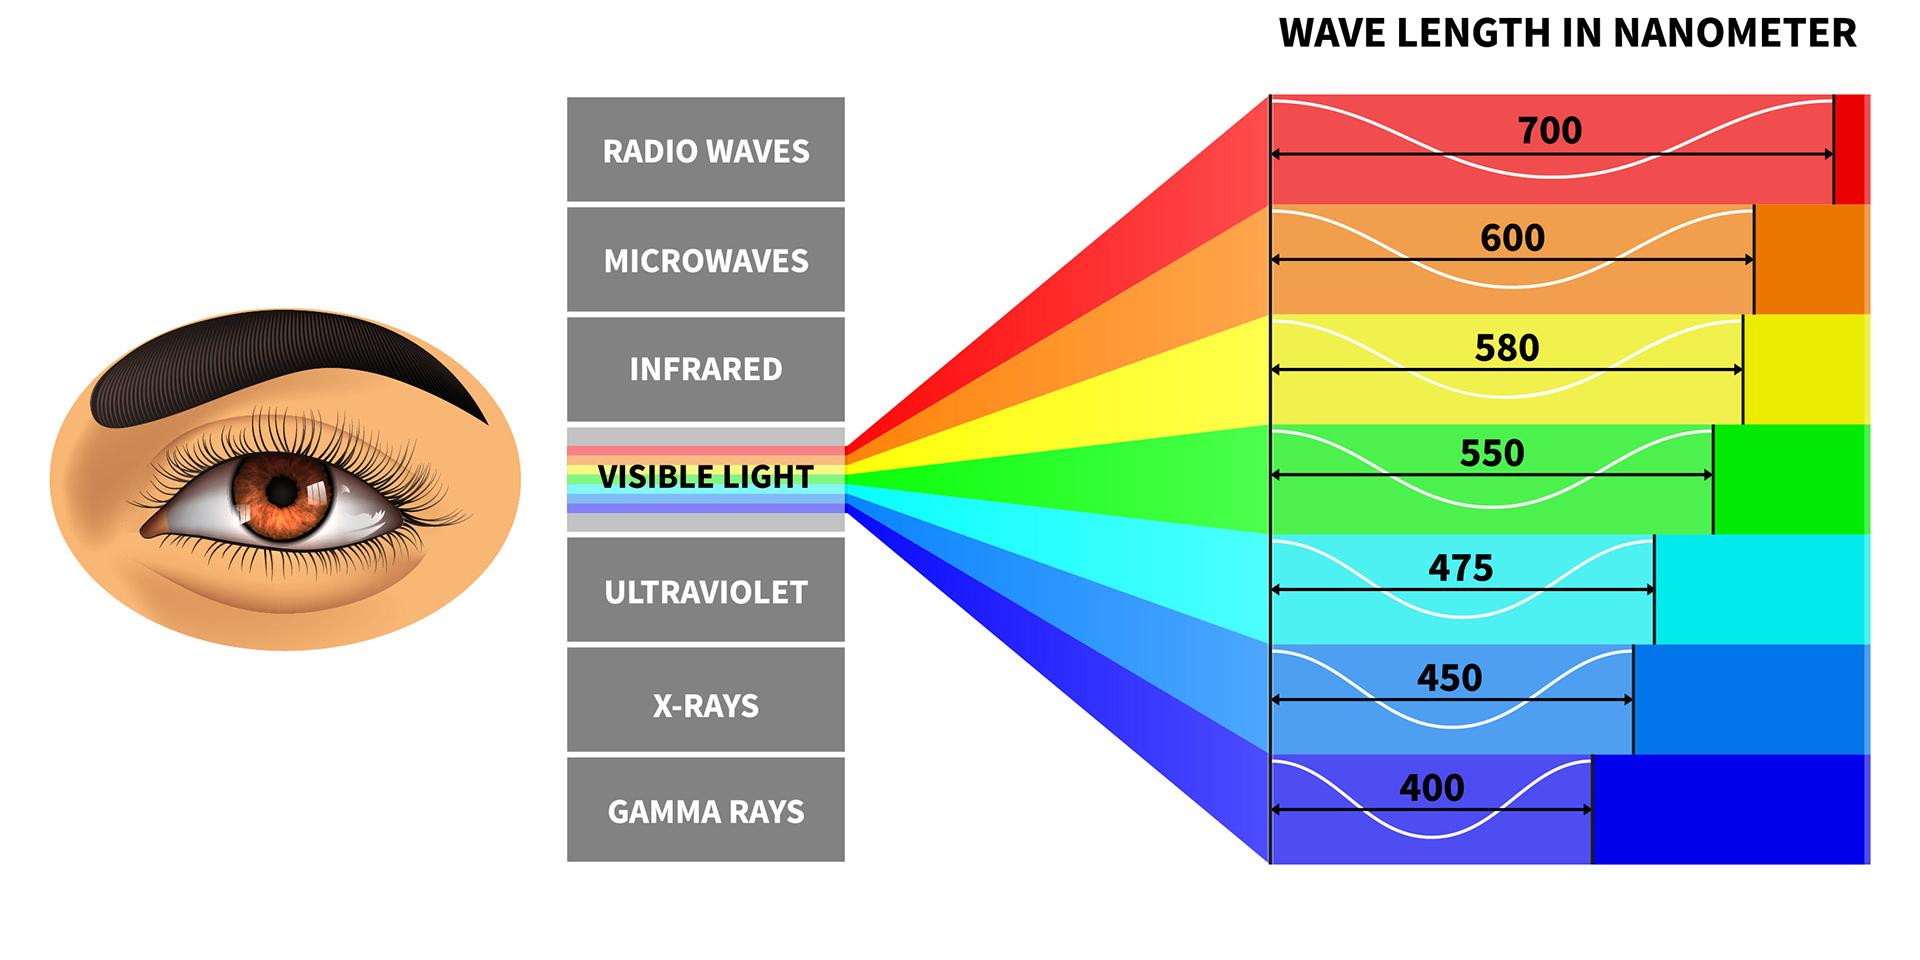 Bare en ganske liten del av det elektromagnetiske spekteret kan sees av det menneskelige synssystemet.